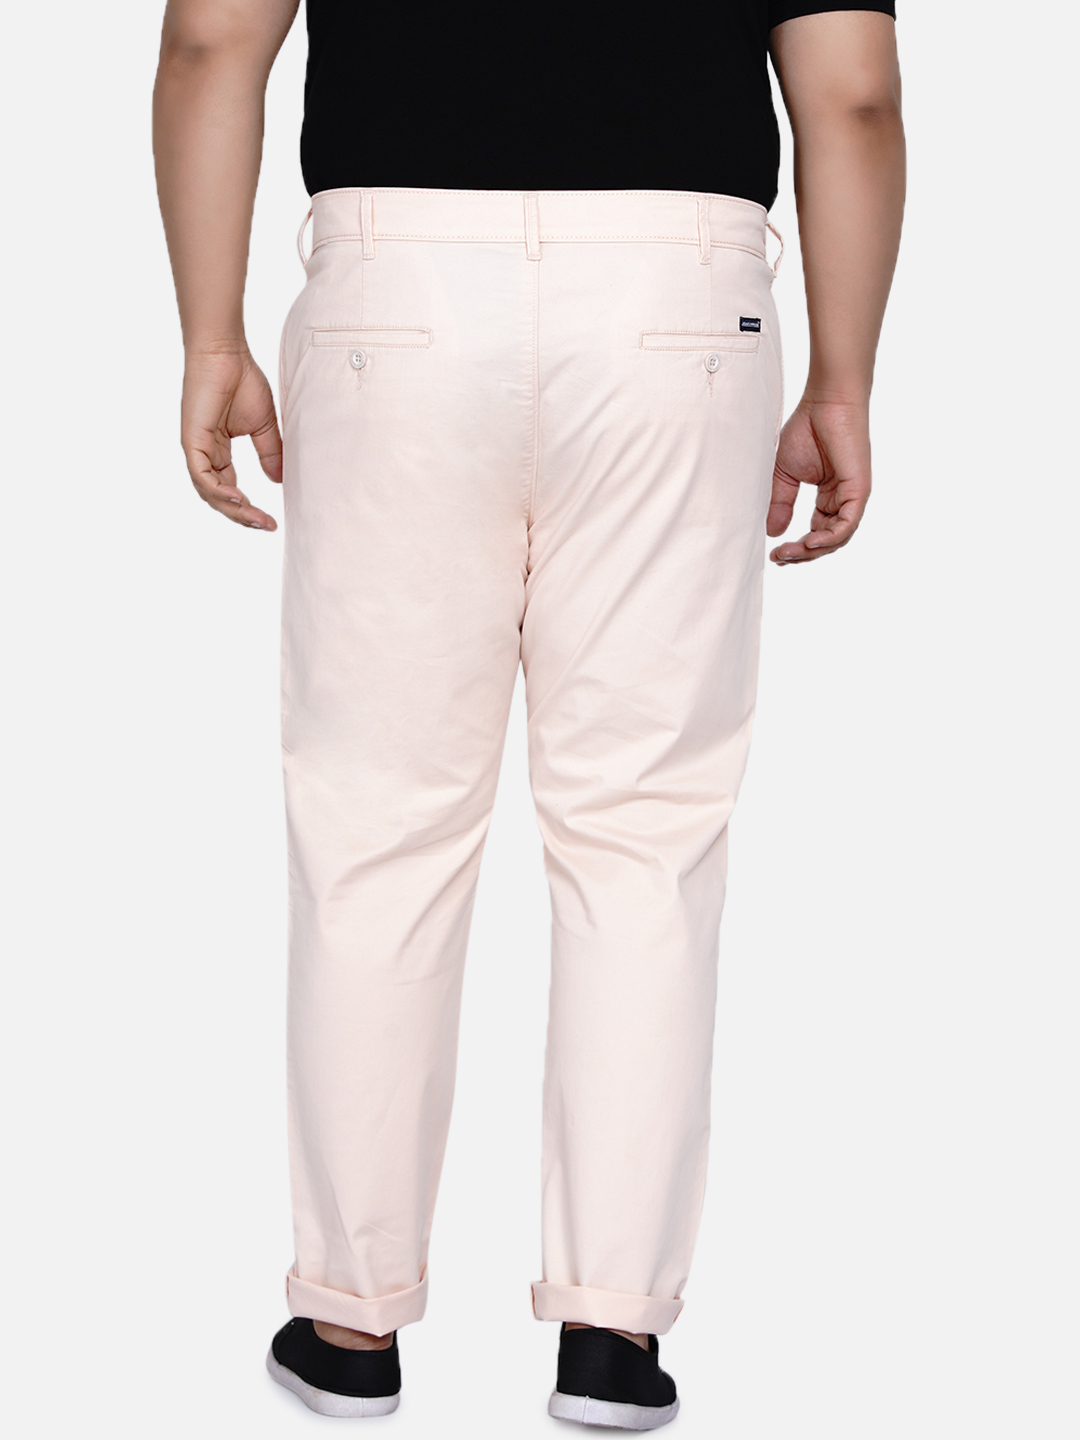 bottomwear/trousers/JPTR2195N/jptr2195n-4.jpg